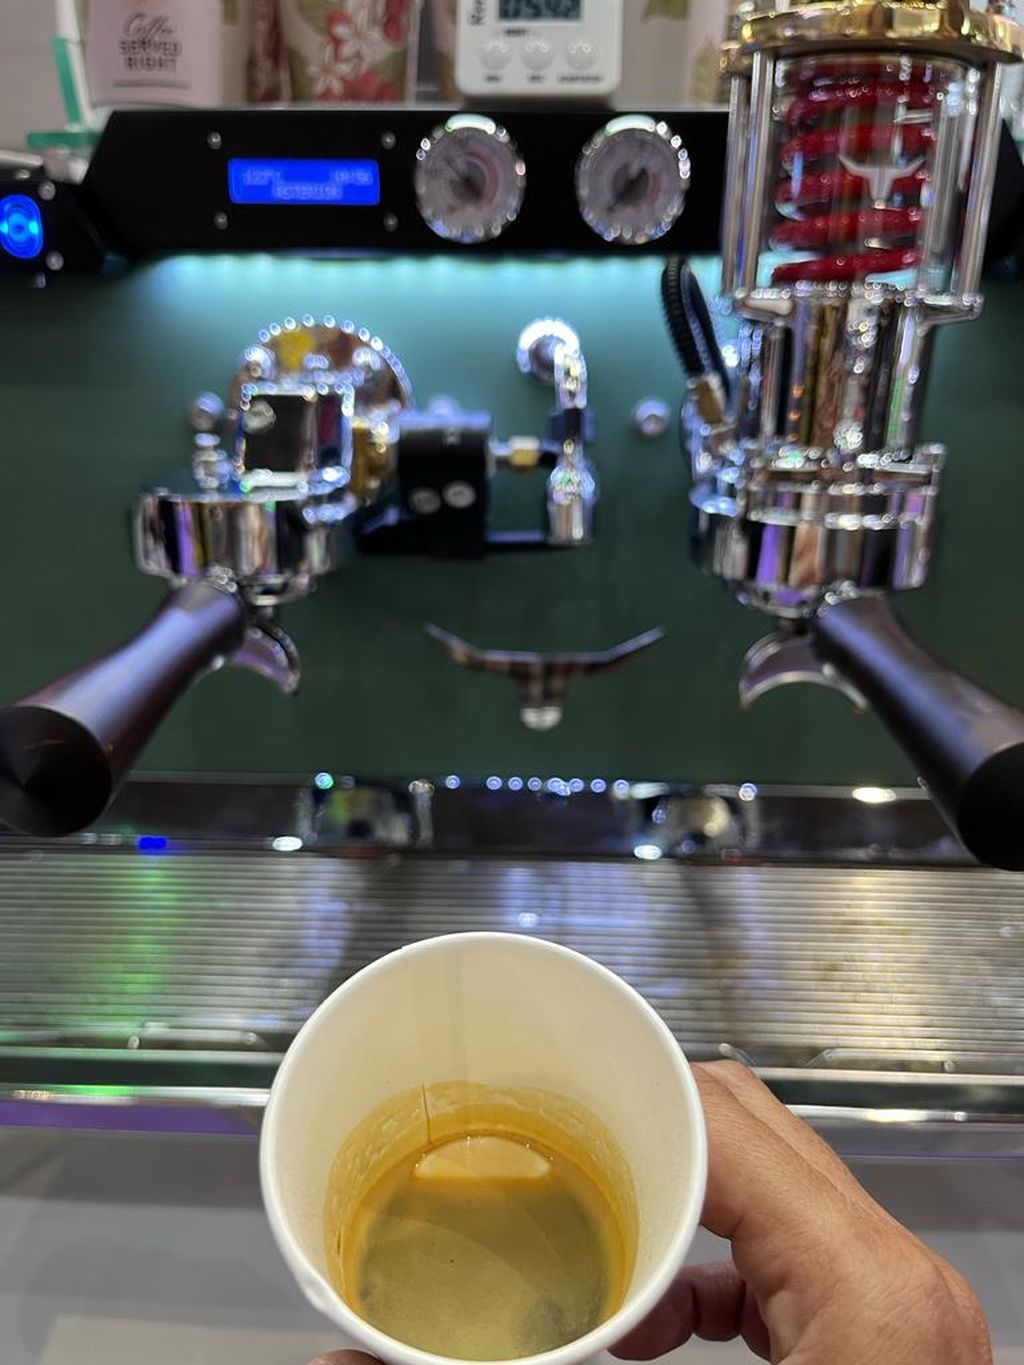 Tampak kopi yang diseduh dengan cara slowpresso dengan mesin Asterion. Secara fisik, tidak ada beda antara kopi yang dihasilkan secara espresso dan slowpresso. Akan tetapi, ada perbedaan rasa yang dihasilkan dengan kedua teknik tersebut.